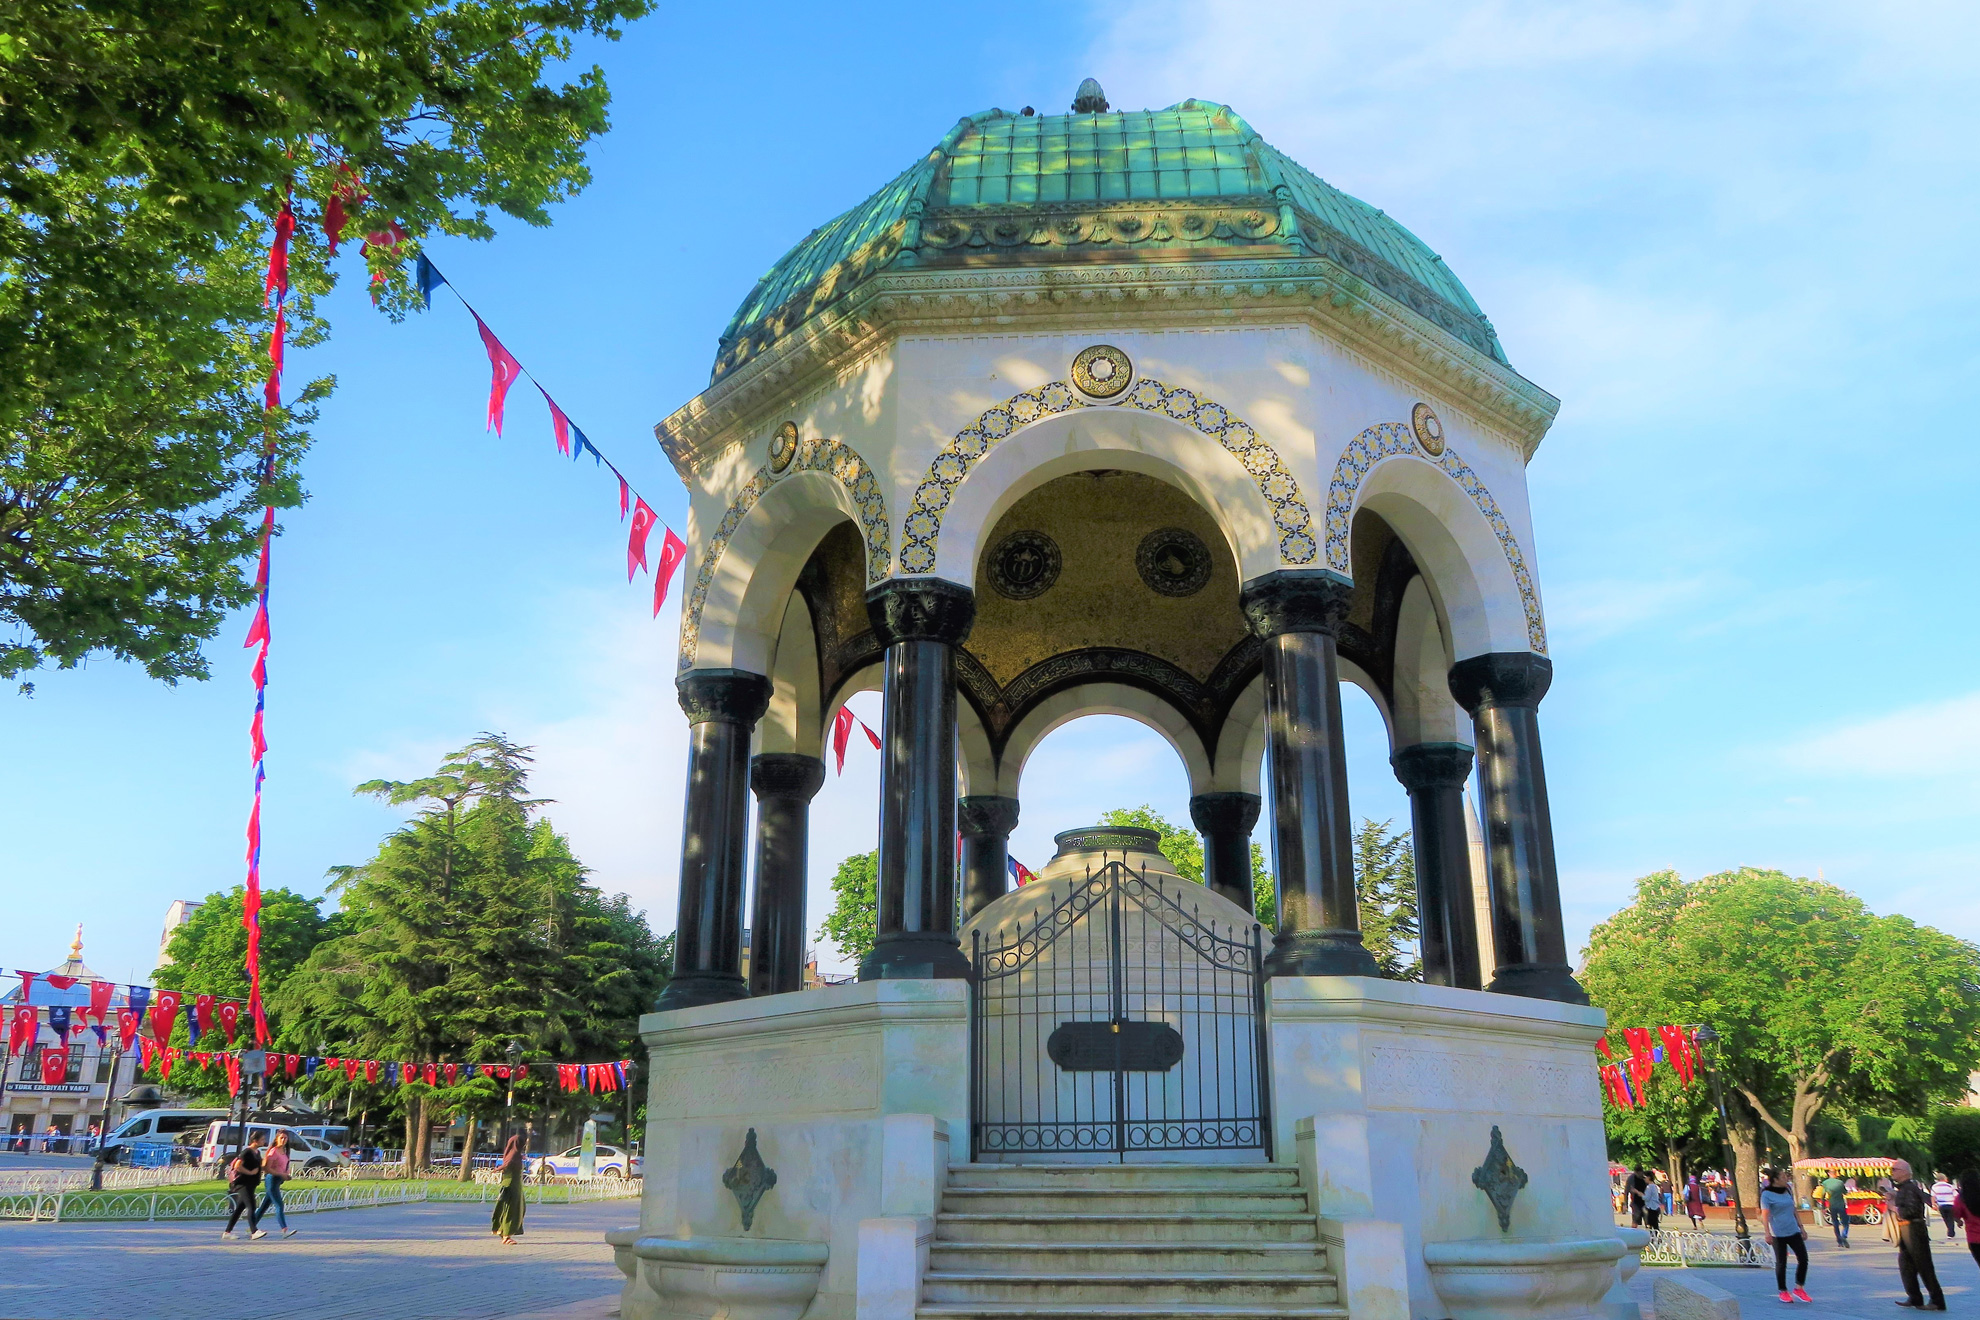  Истанбул - величието на една империя - Фонтана на Вилхелм II, Истанбул, Турция - The Fountain of Wilhelm II, Istanbul, Turkey